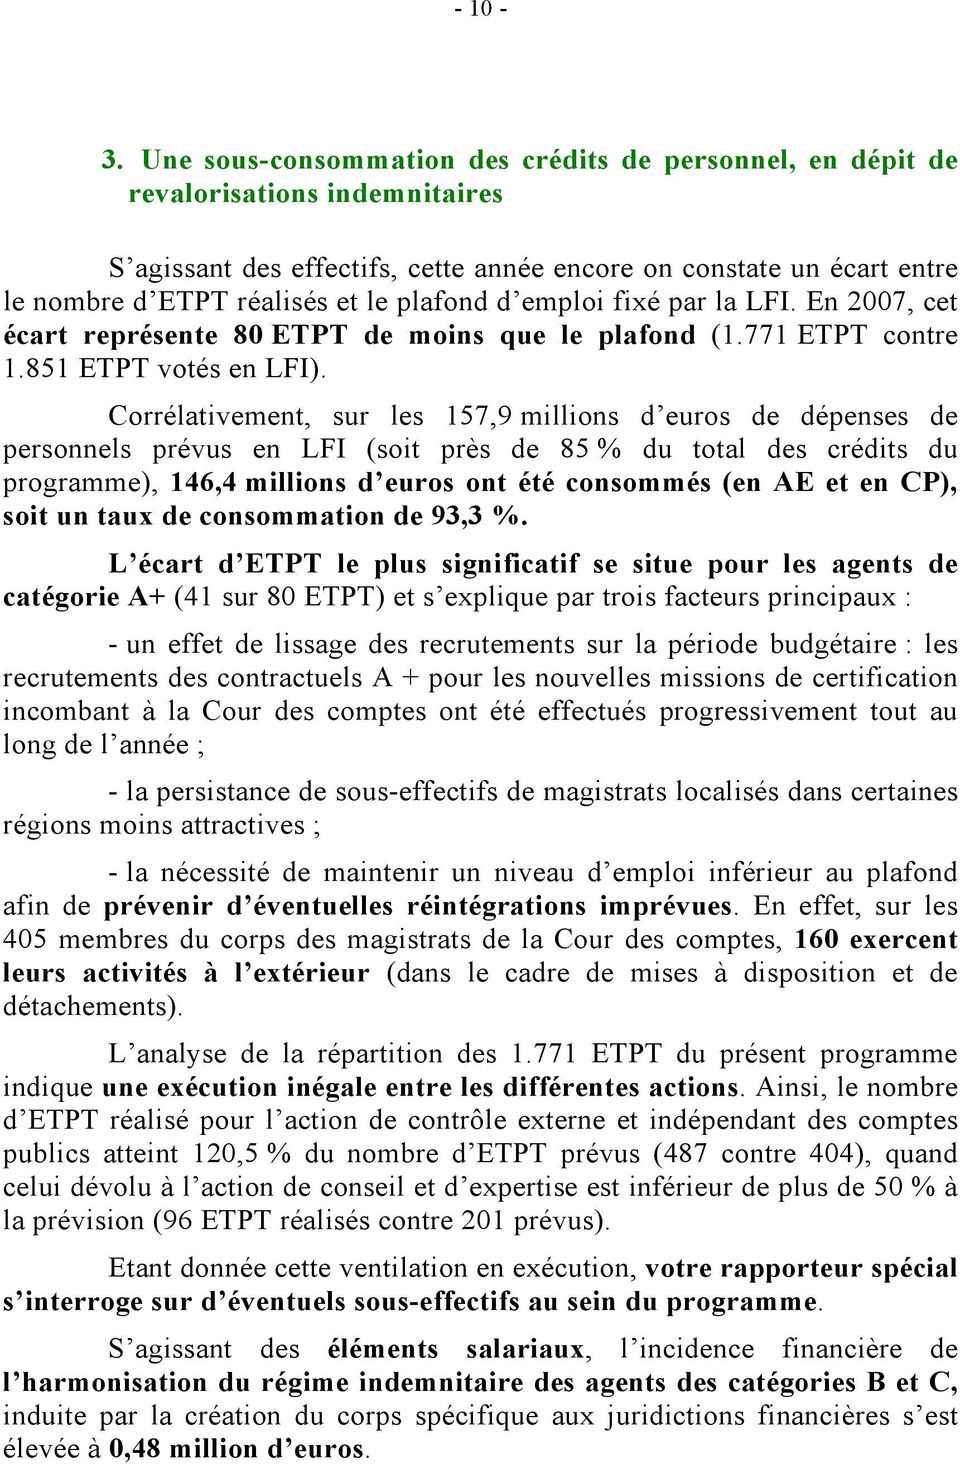 plafond d emploi fixé par la LFI. En 2007, cet écart représente 80 ETPT de moins que le plafond (1.771 ETPT contre 1.851 ETPT votés en LFI).